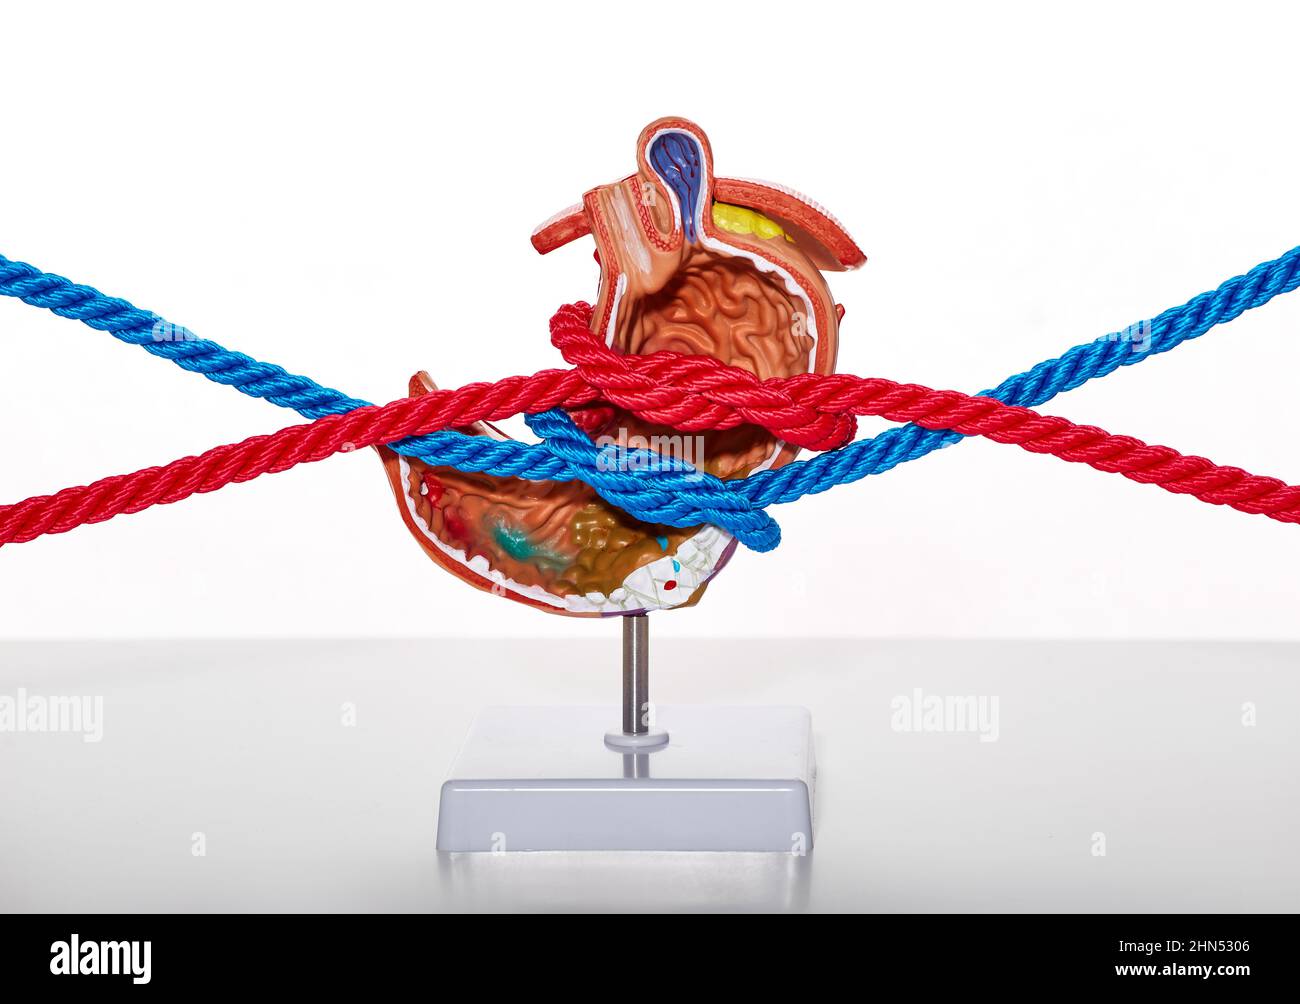 Probleme und Krankheiten des menschlichen Magens, engen Magen. Anatomisches Modell des Magens mit Seilen gebunden, die Magenkompression und enge Empfindung simulieren Stockfoto